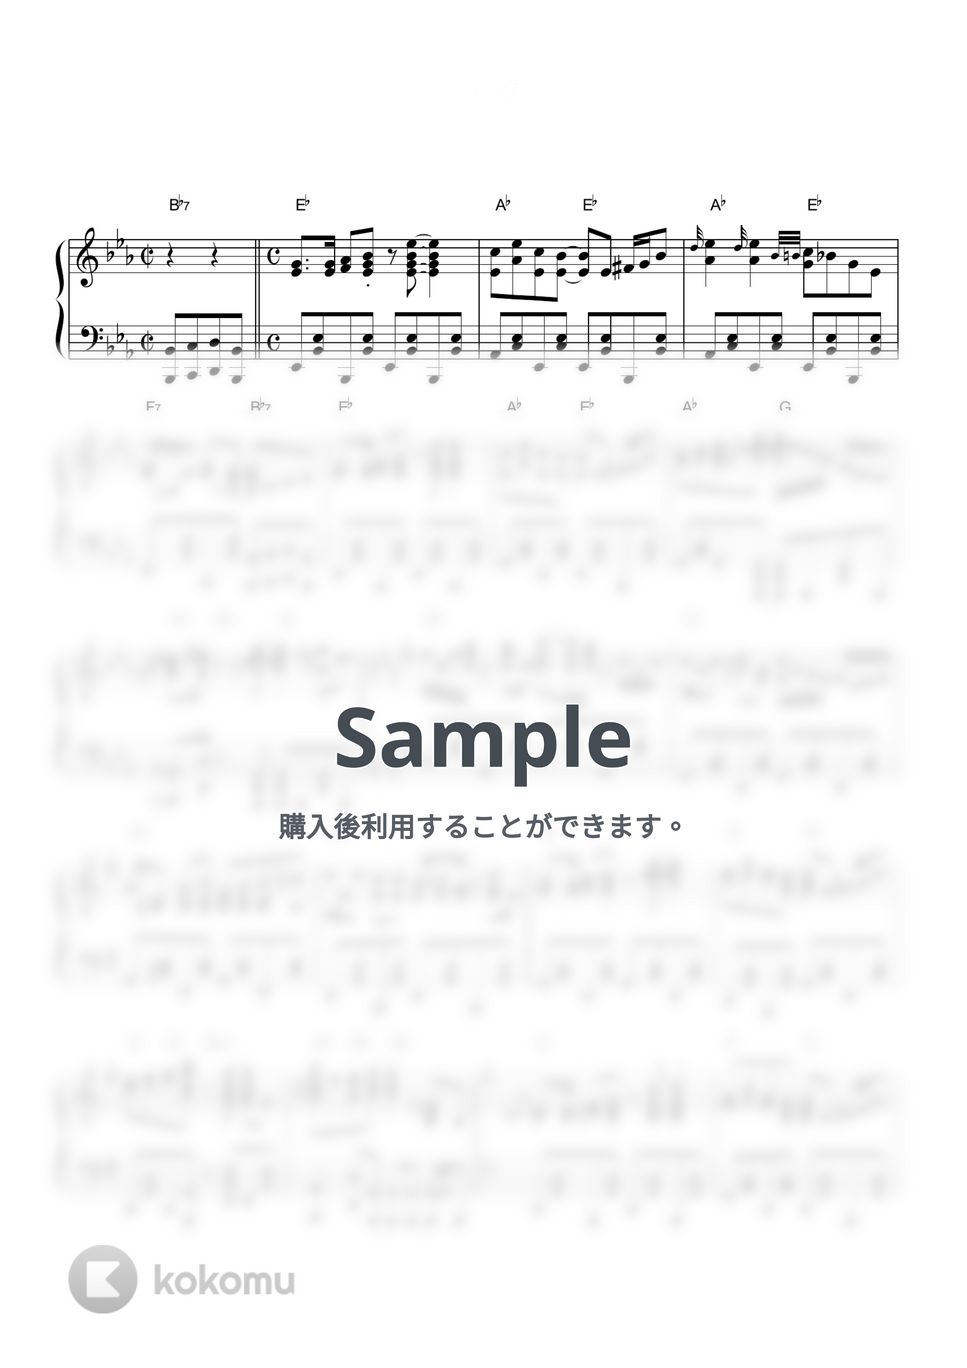 南部の唄 - ジッパディードゥーダー (ピアノソロ / ディズニー / Disney / コード有) by CAFUNE